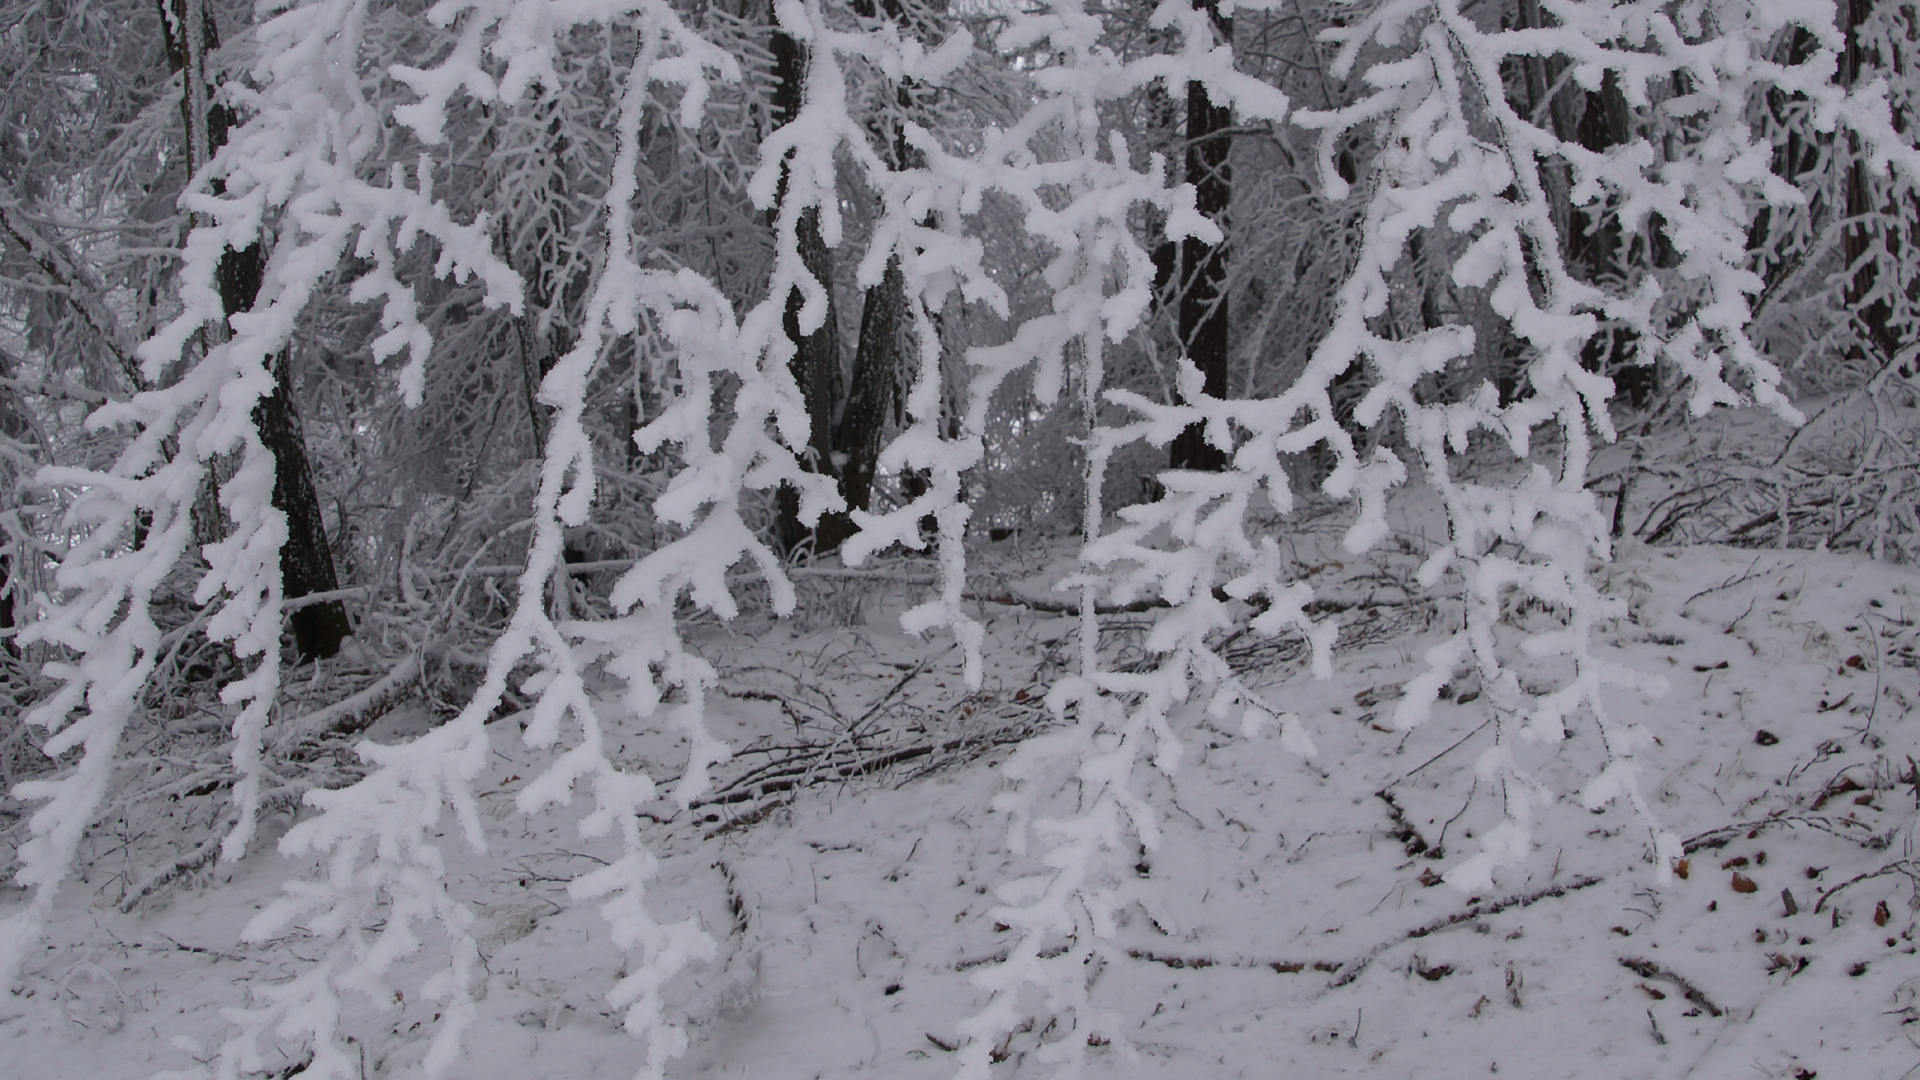 Fotostrecke Winter Abbildung 44: Nach dem Schneesturm